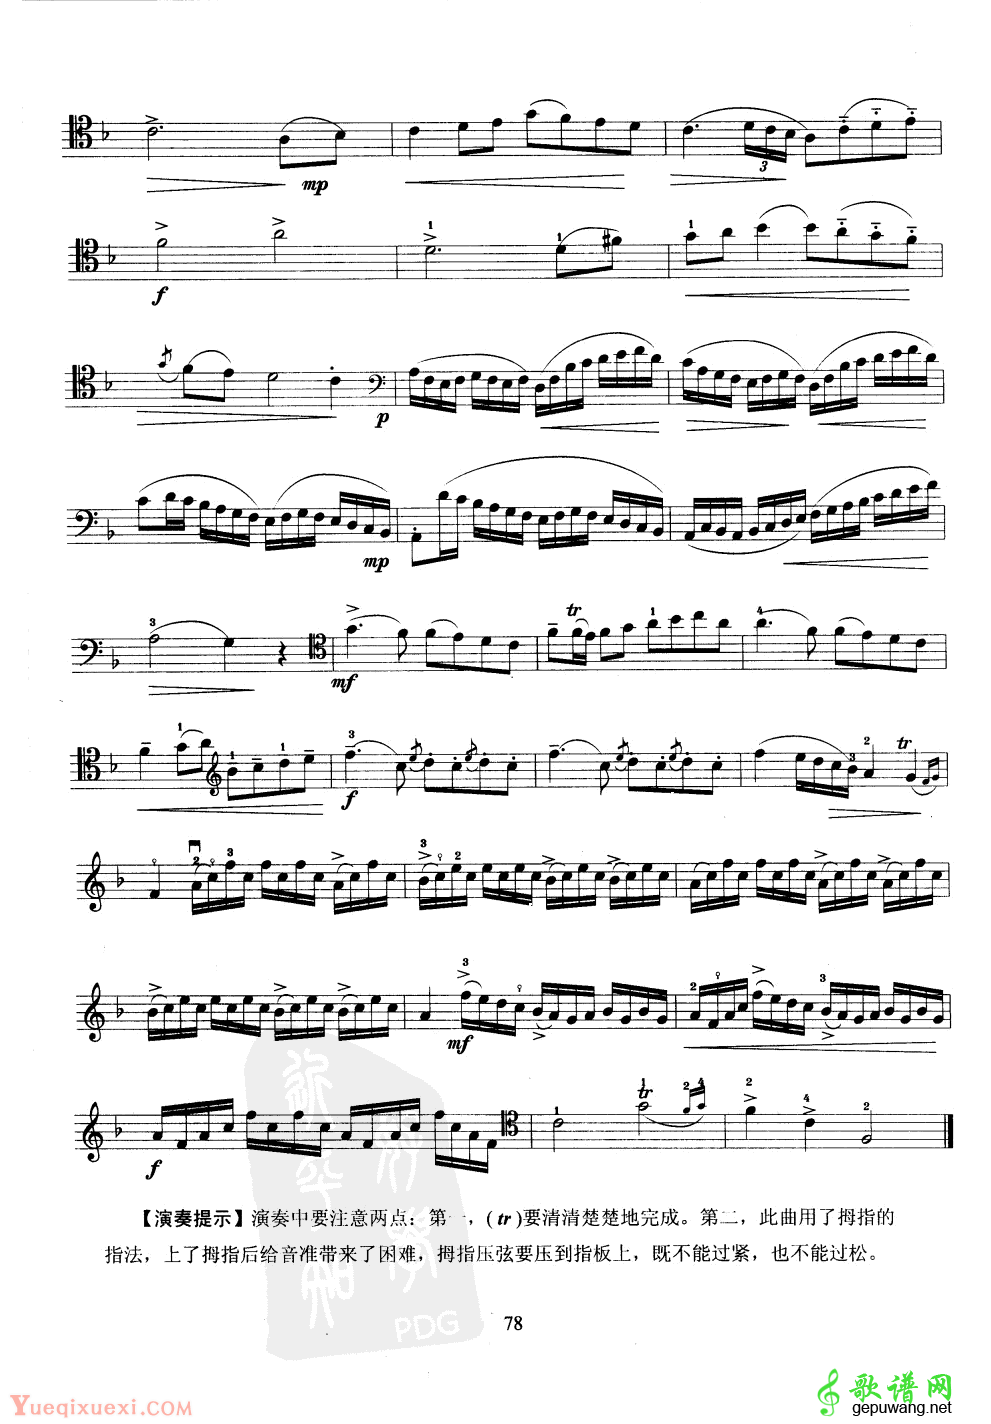 大提琴第八级乐曲练习谱